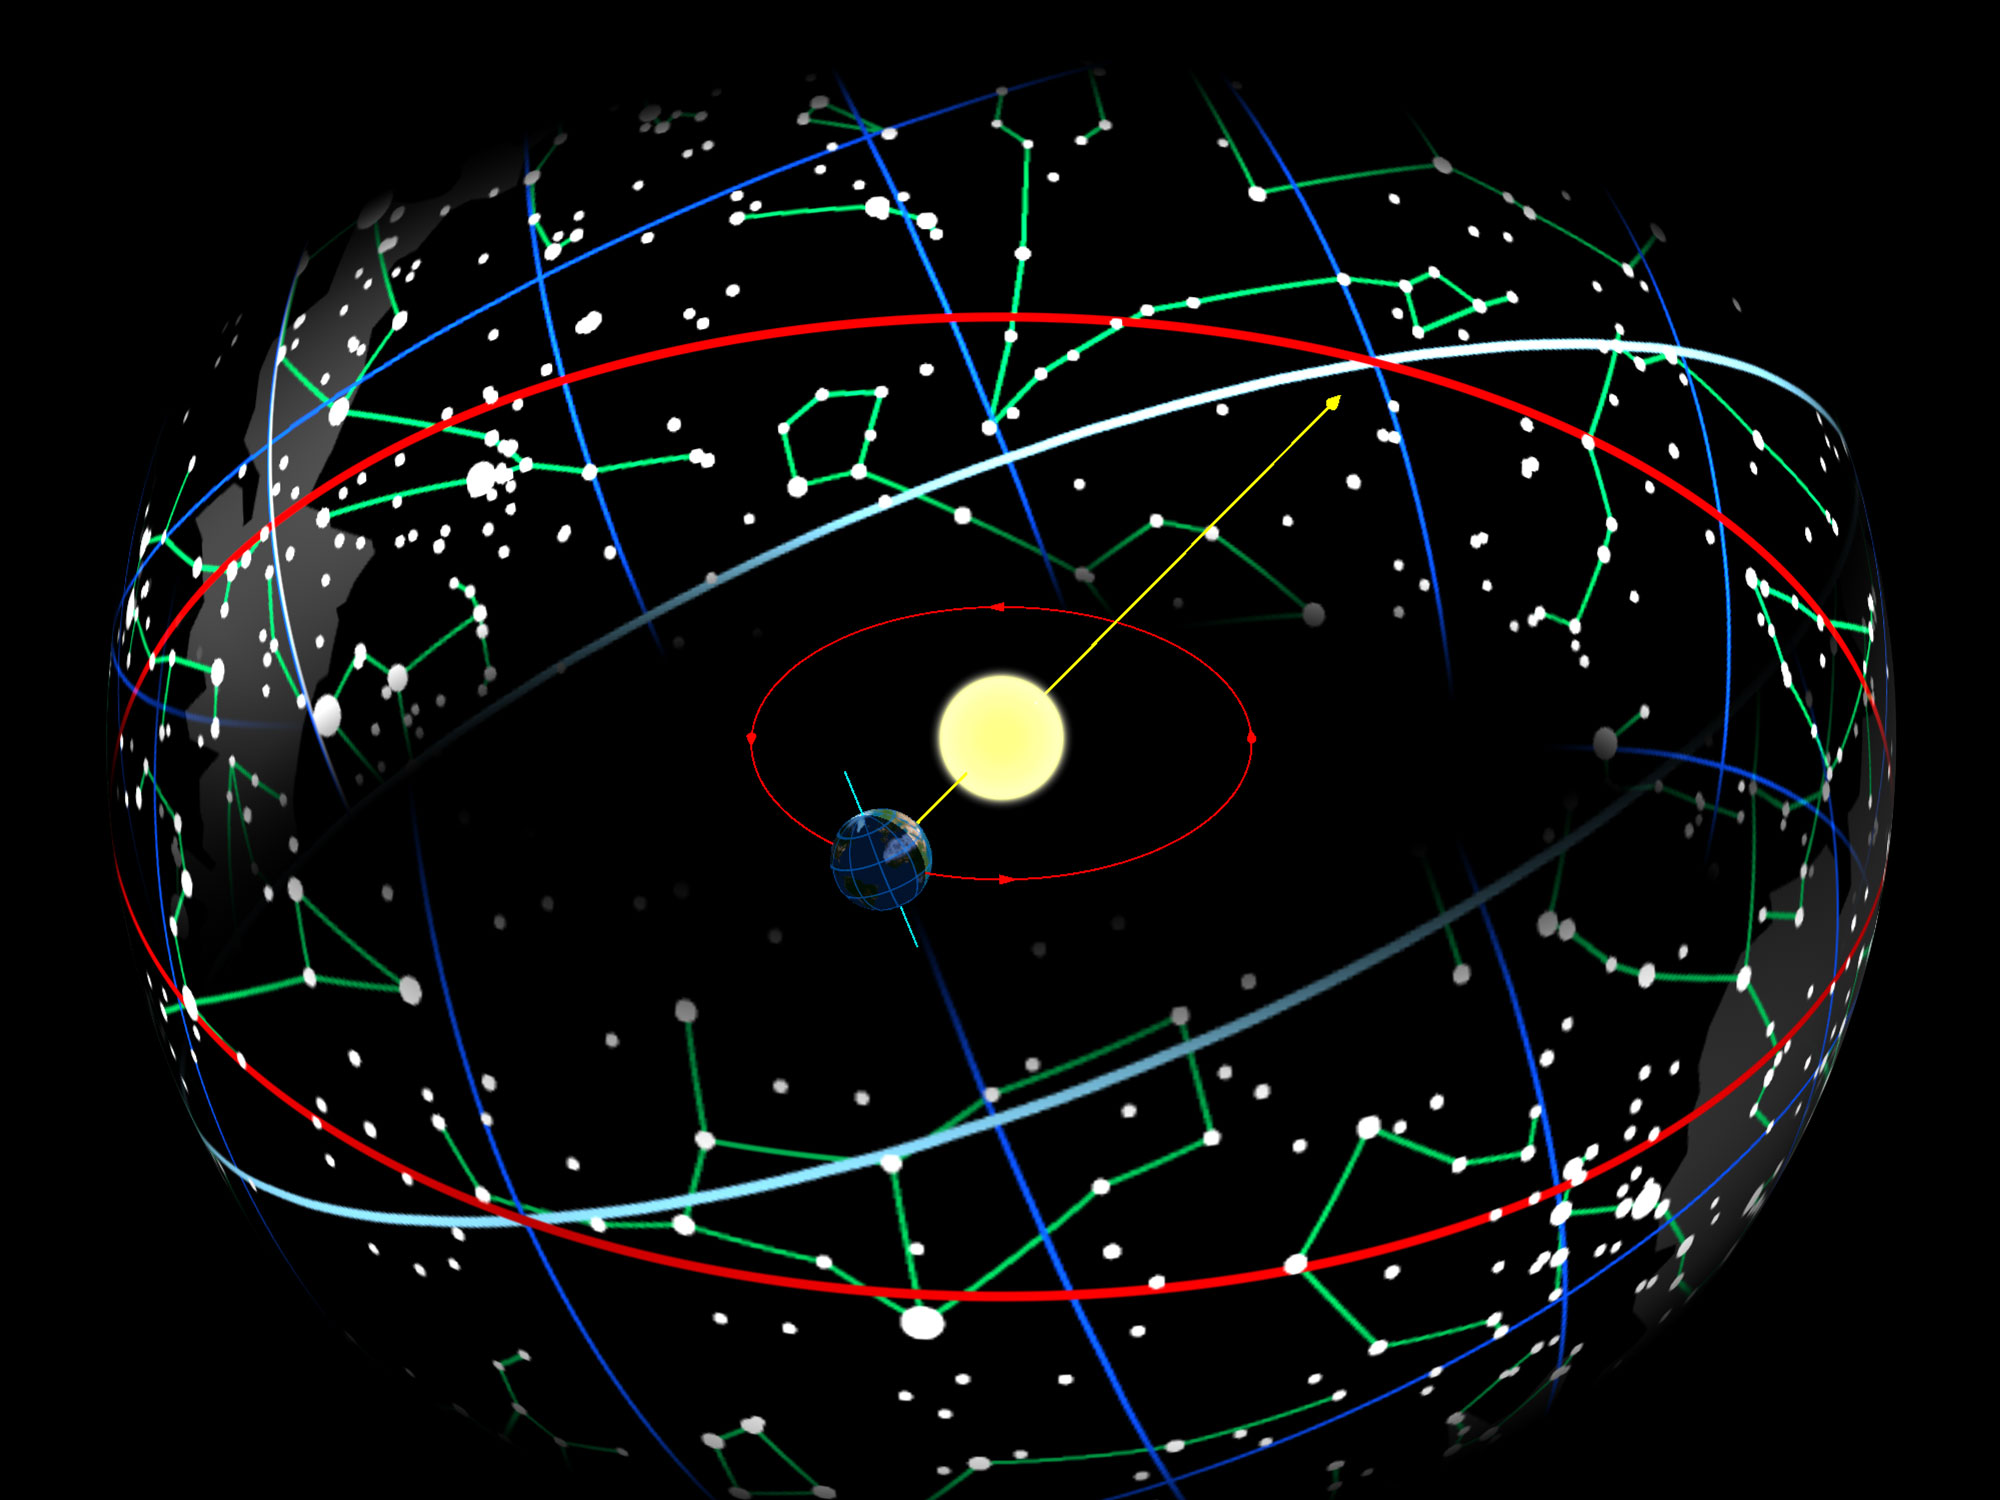 Ang Earth sa orbit nito sa paligid ng Sun ay nagiging sanhi ng Sun upang lumitaw sa celestial globo na lumilipat sa kahabaan ng ecliptic (red circle), na may gilid 23.44 ° may kinalaman sa celestial equator (asul-puti).